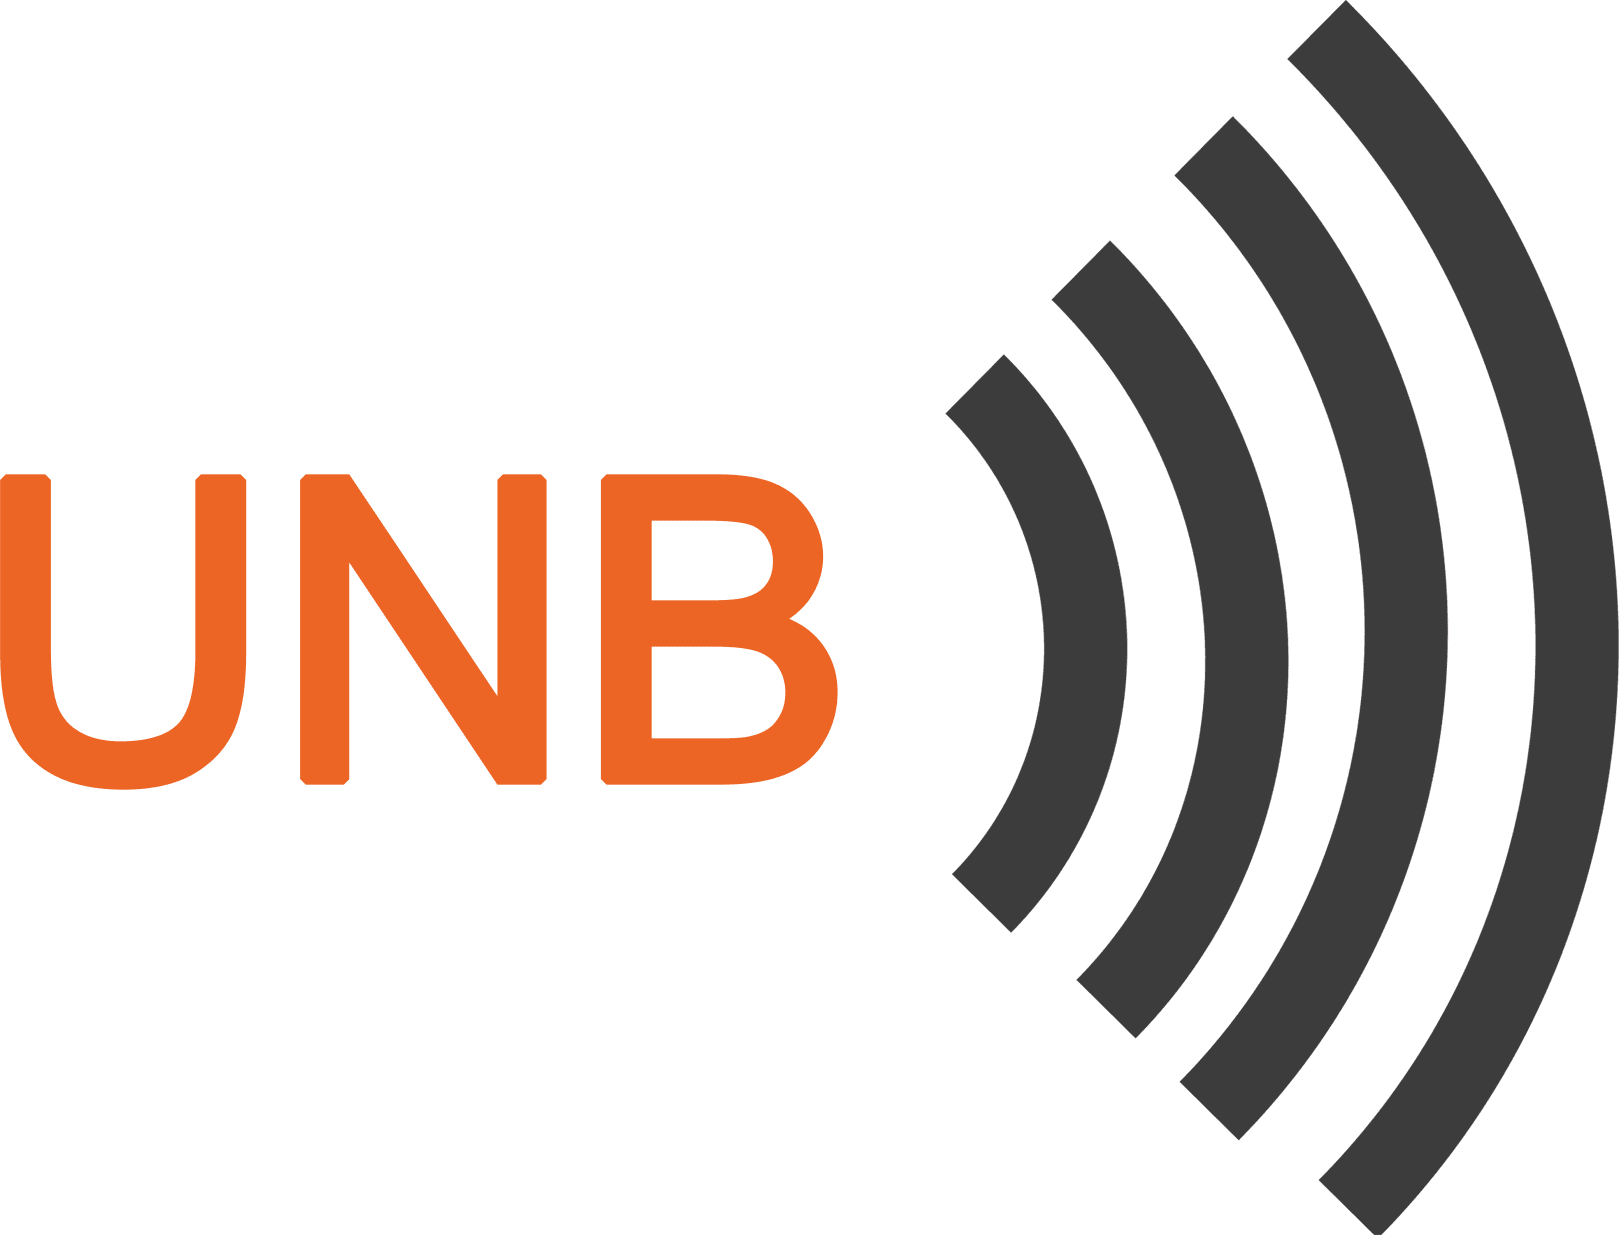 Logo of UNB